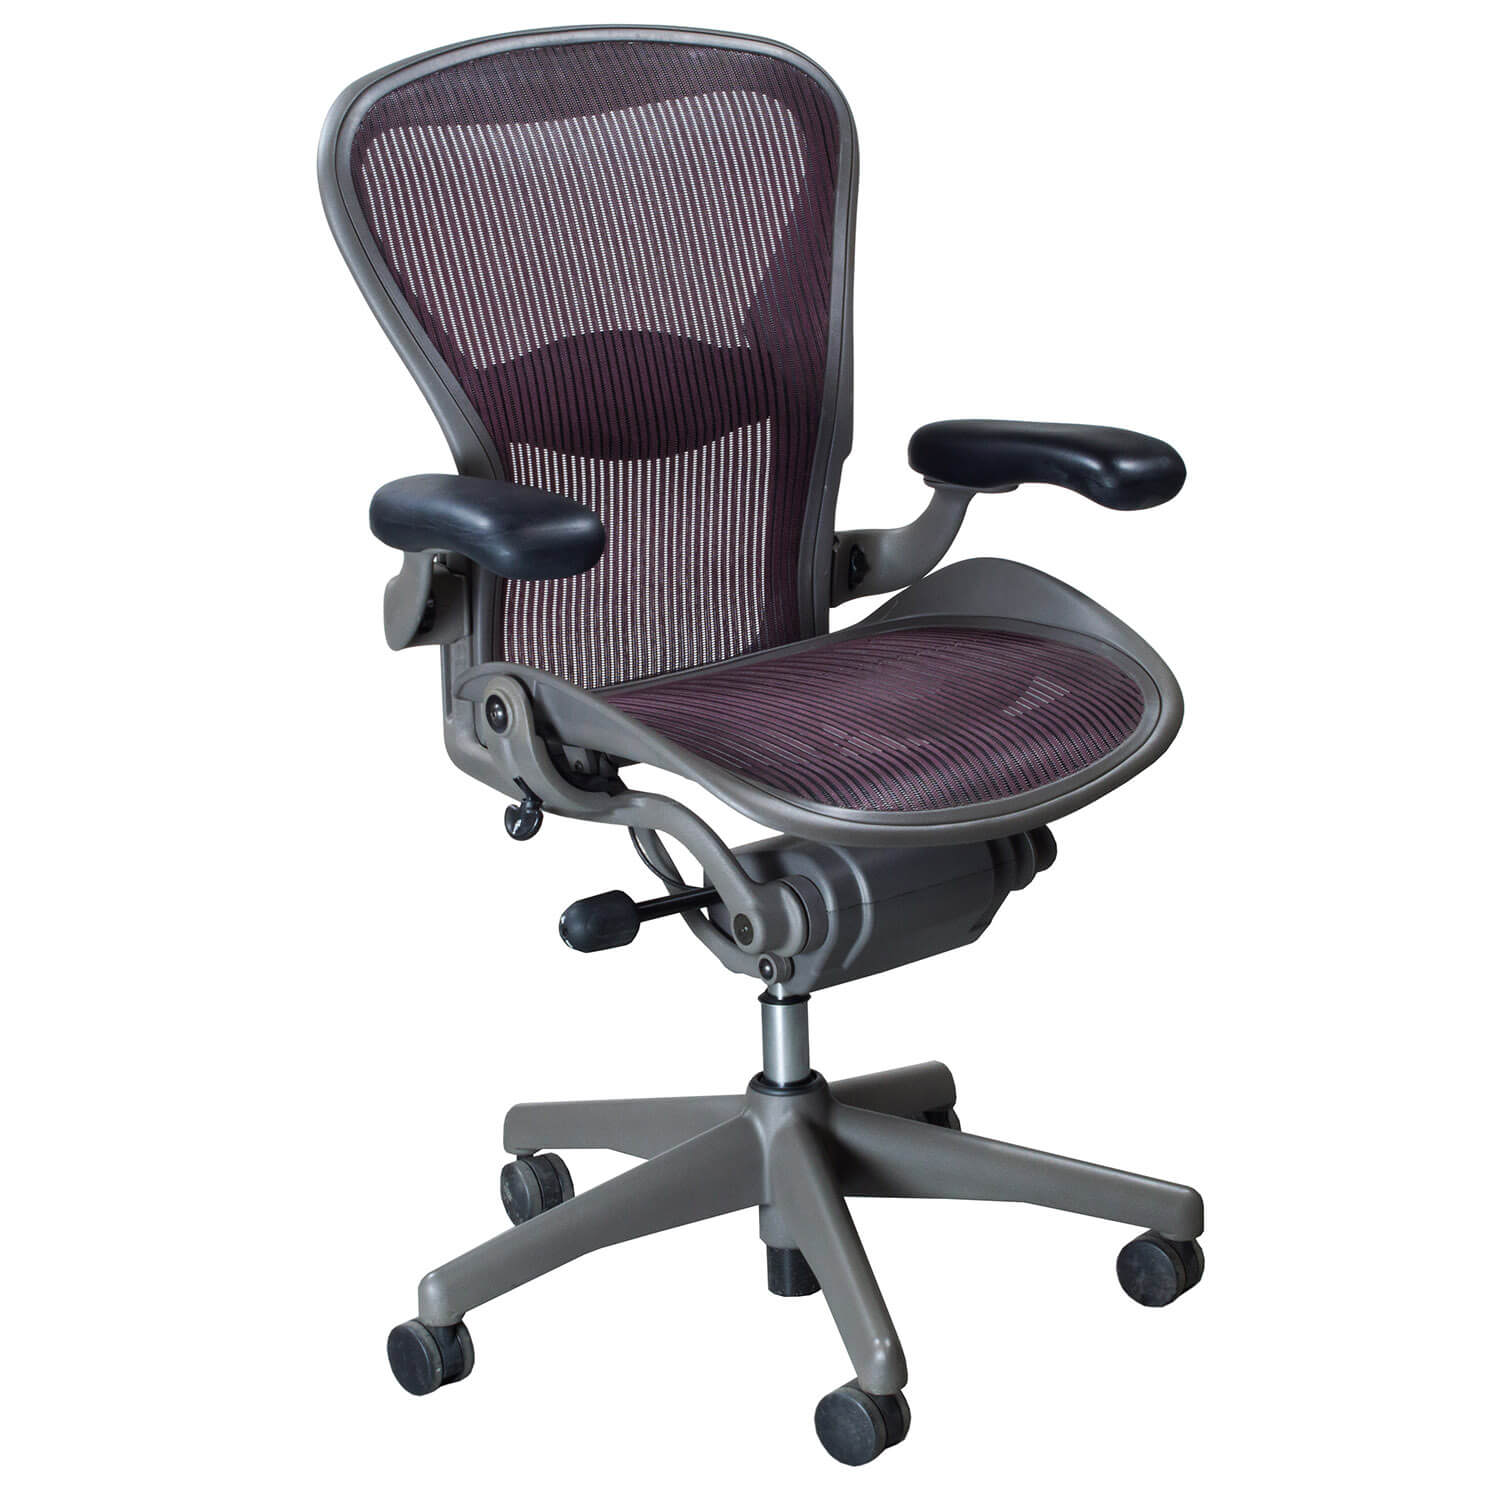 (48) Aeron Chairs